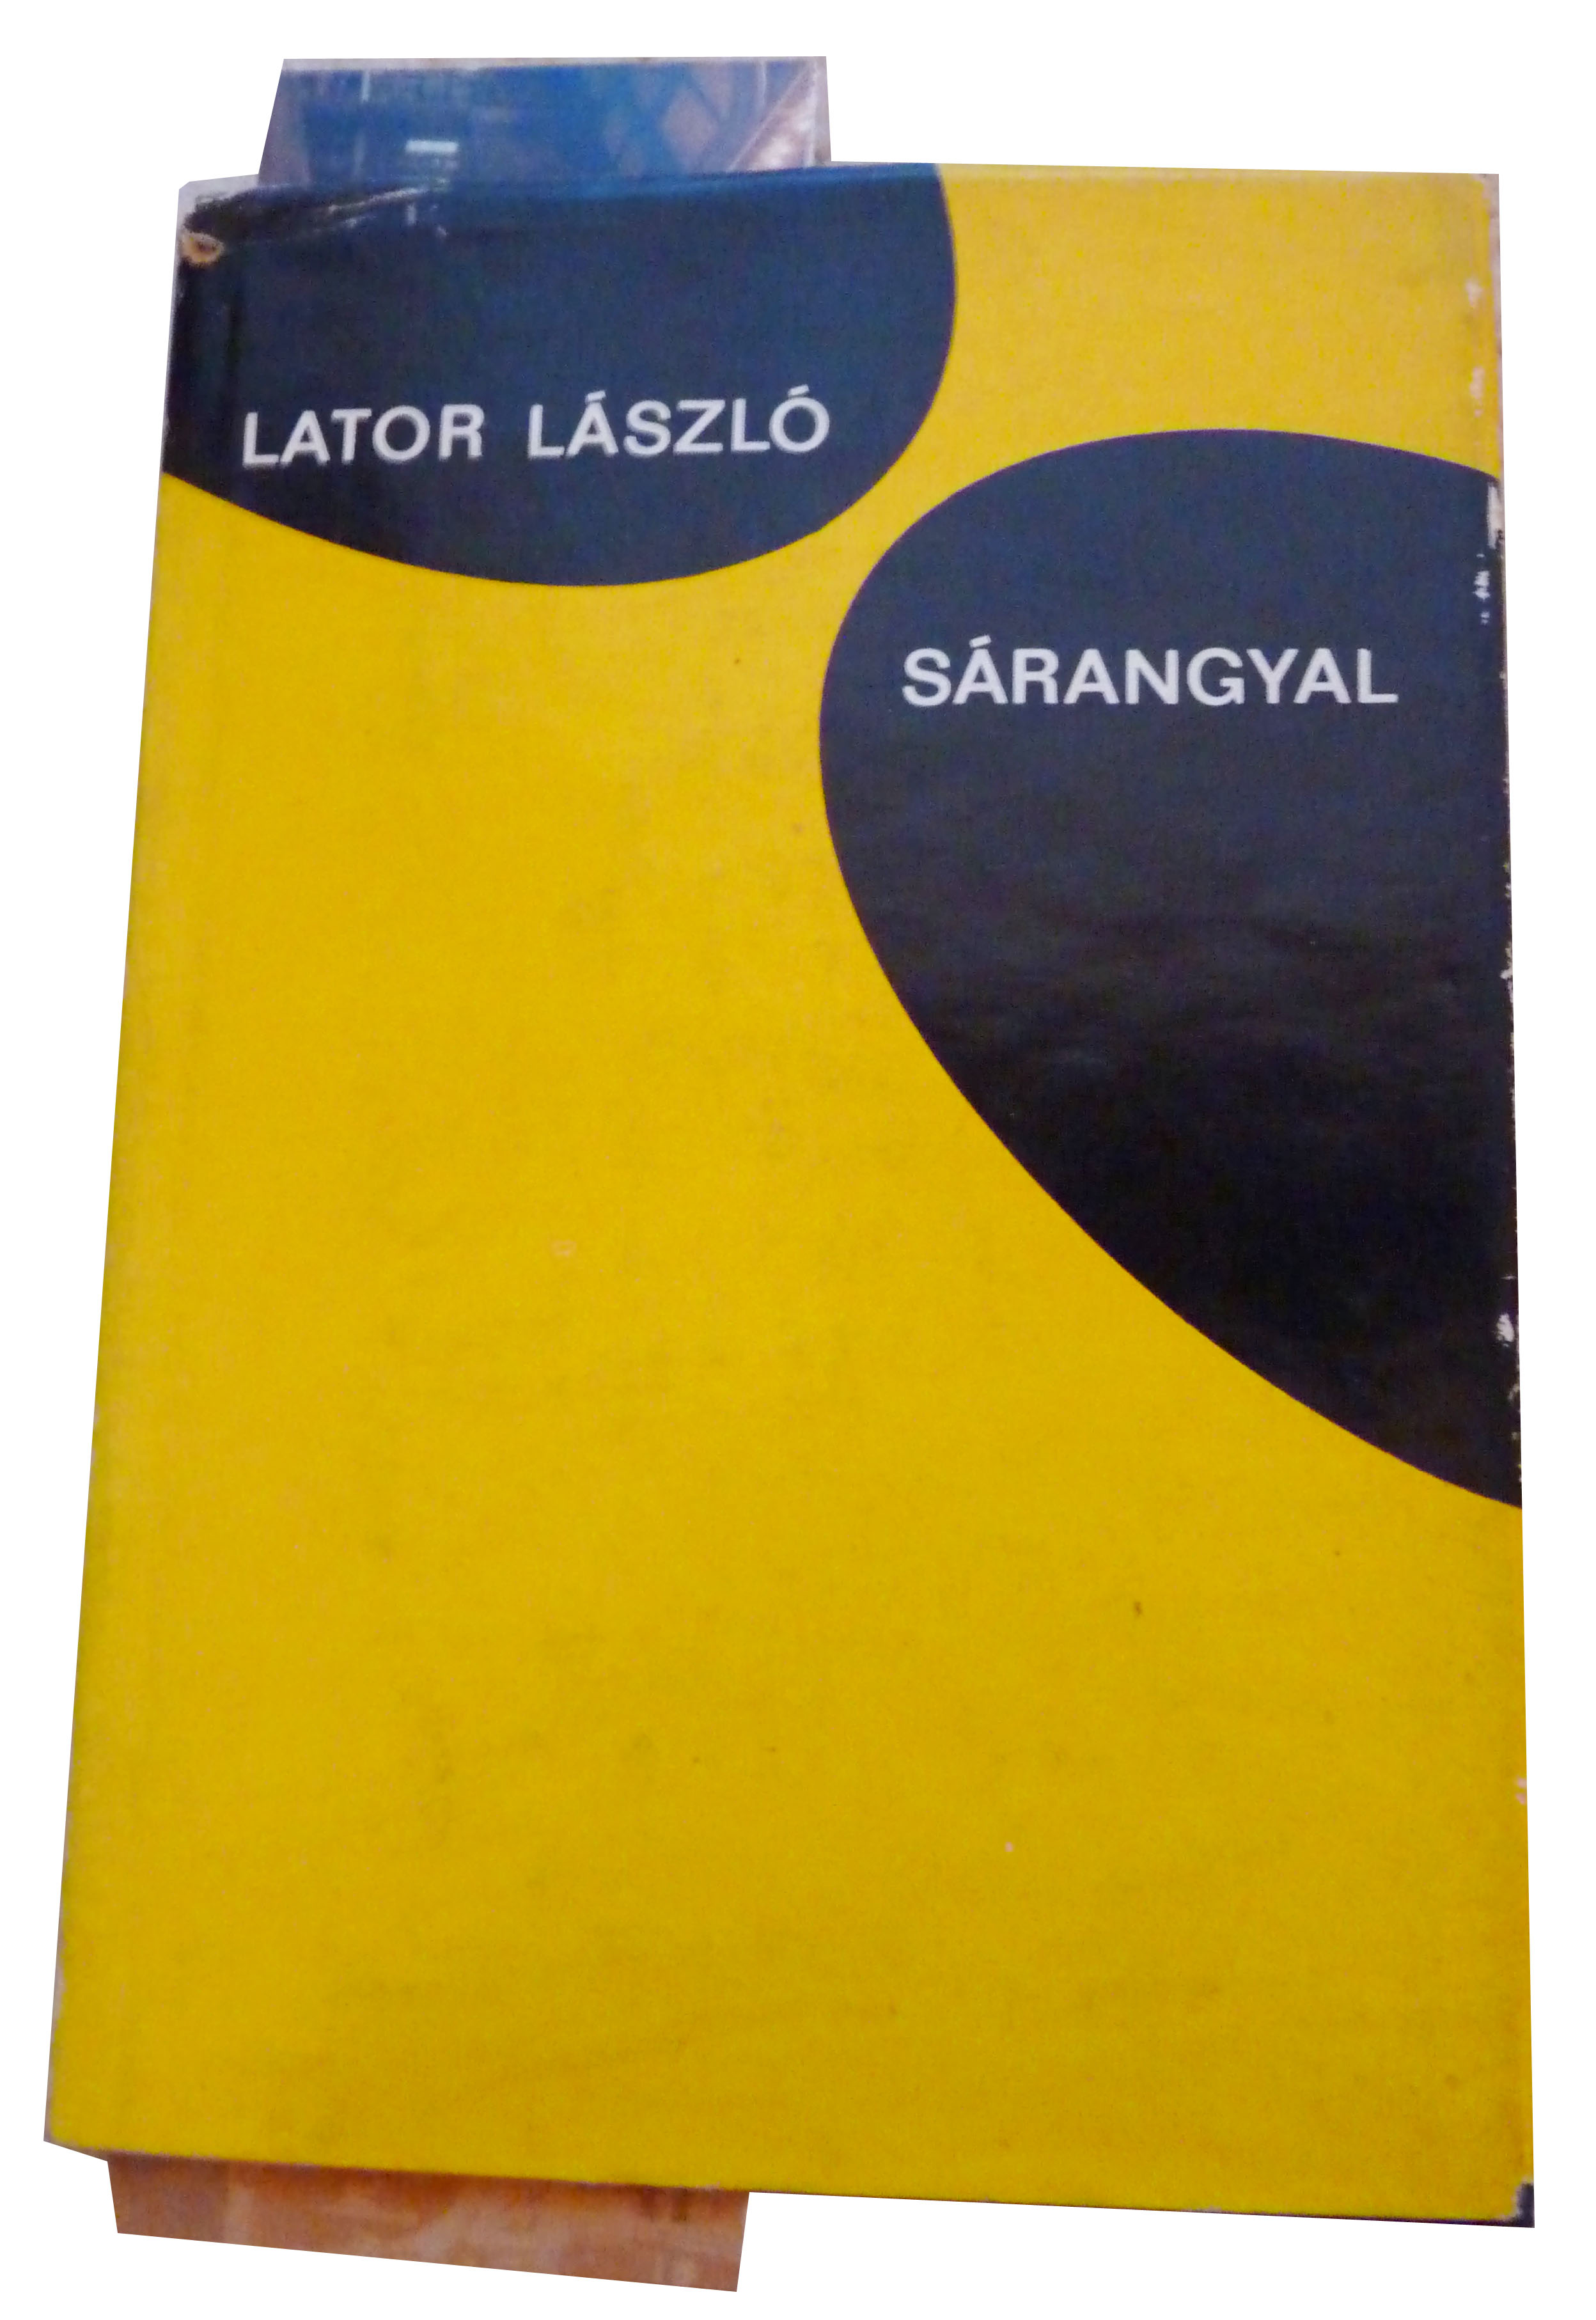 Lator László